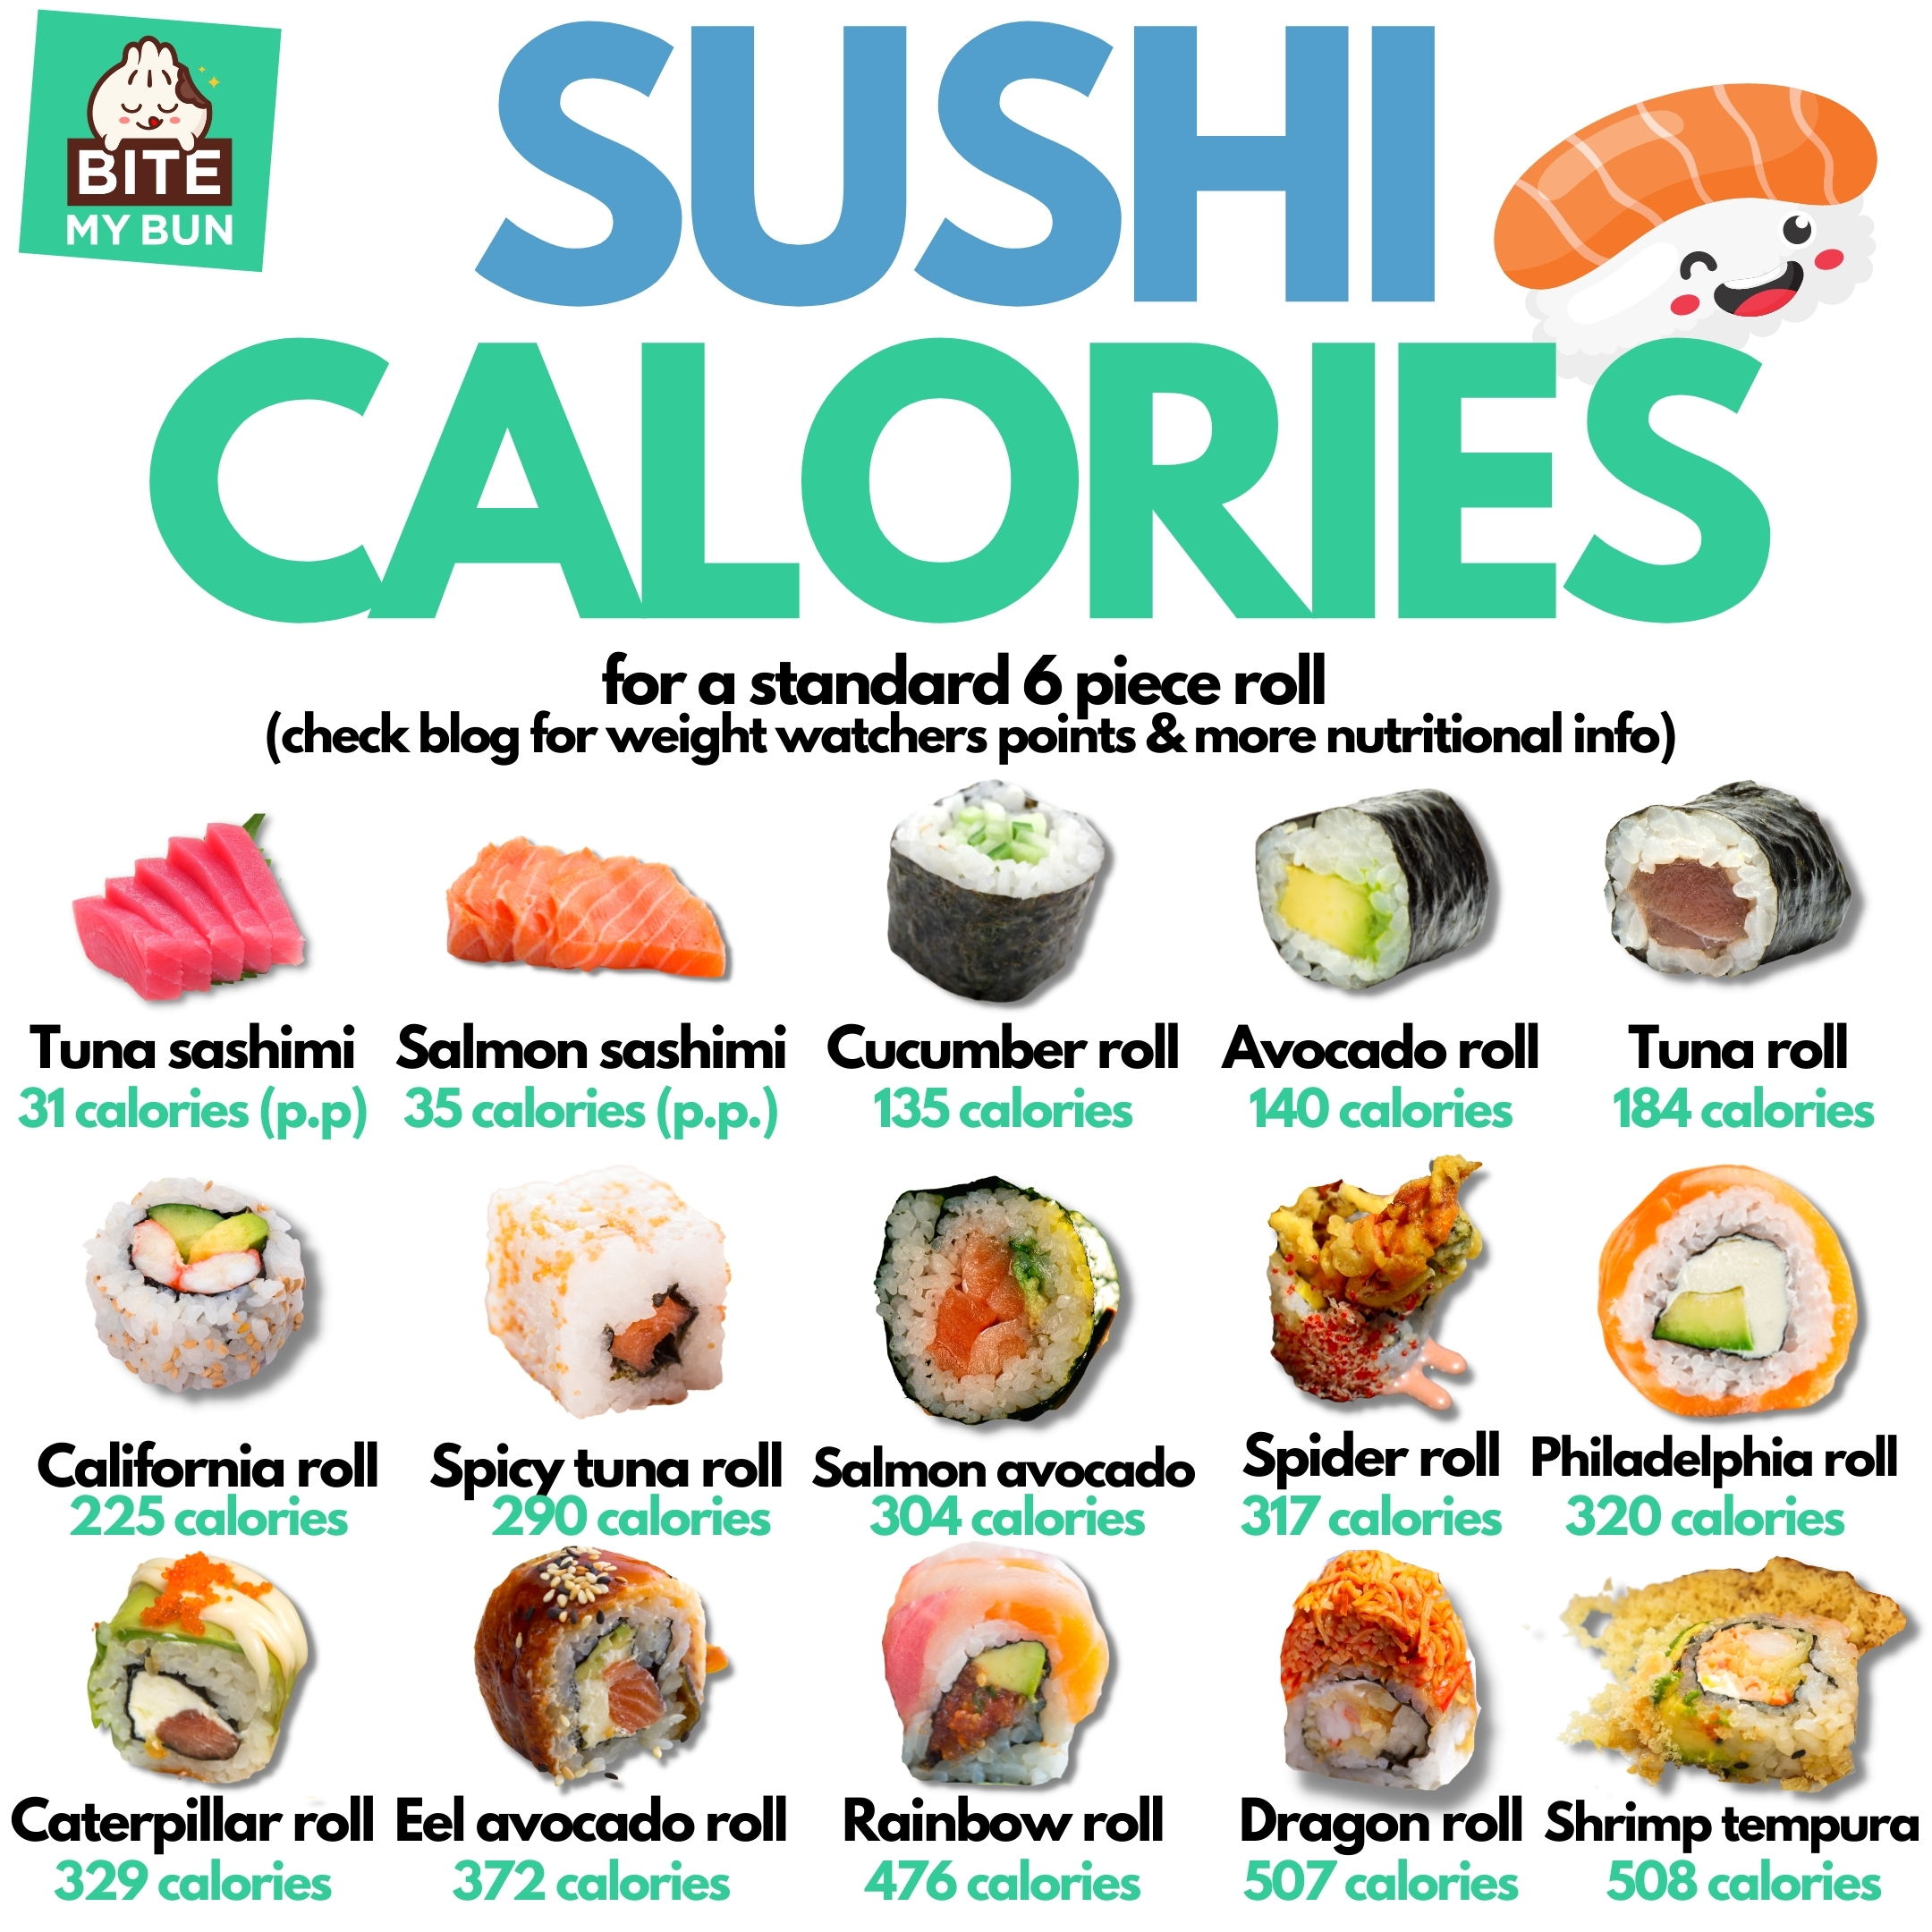 Calorías de sushi